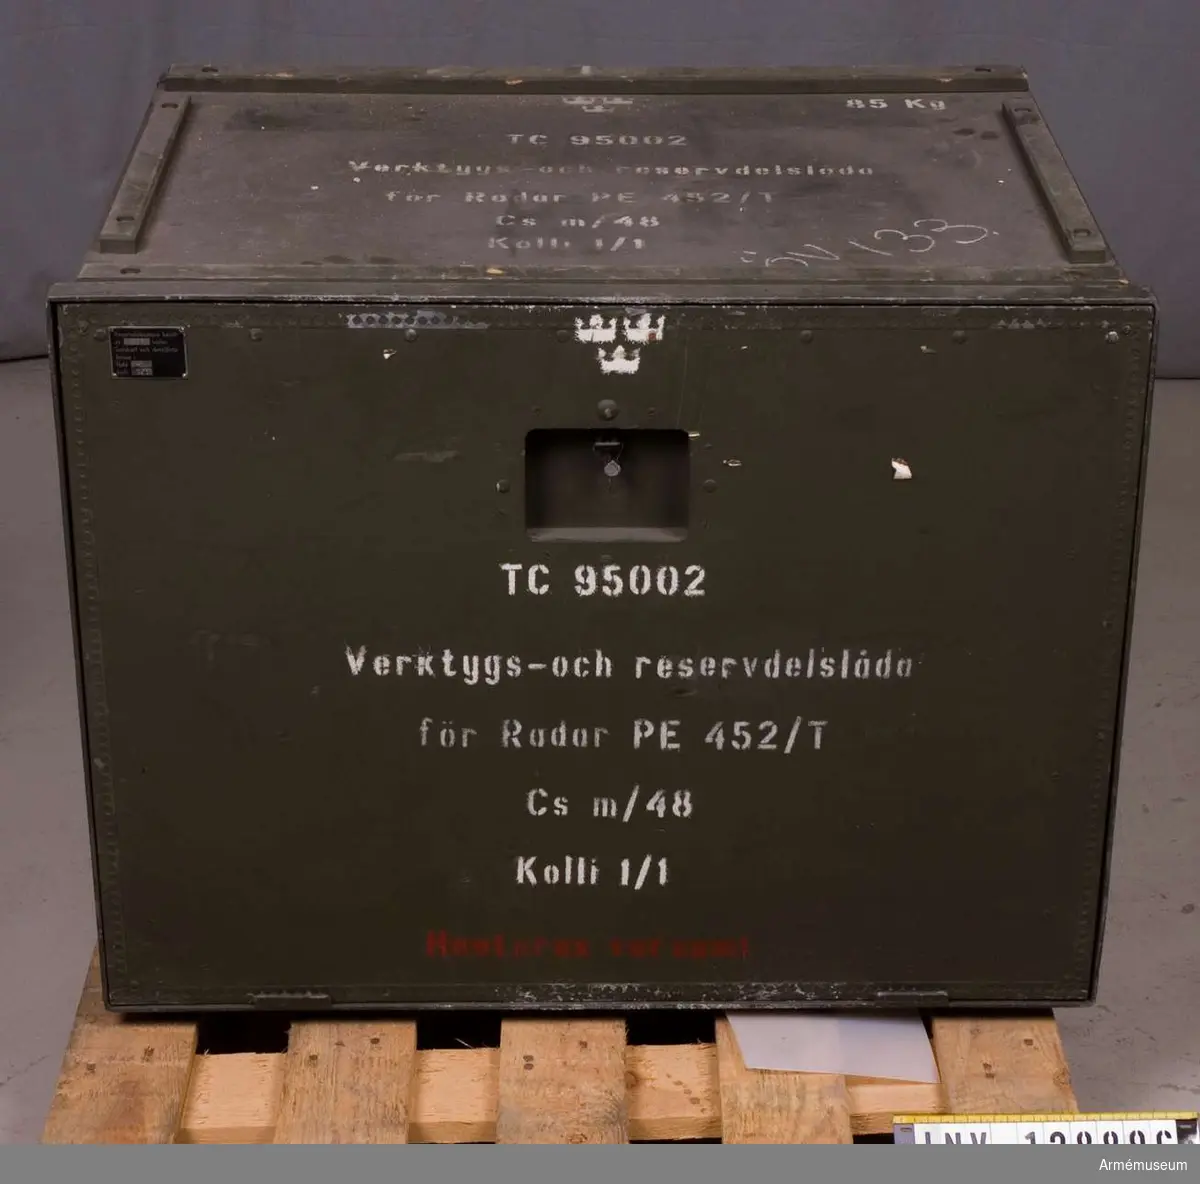 Vkt o resdelar t rad PE 452/T. Cs m/1948.
I låda. Tc 95002.